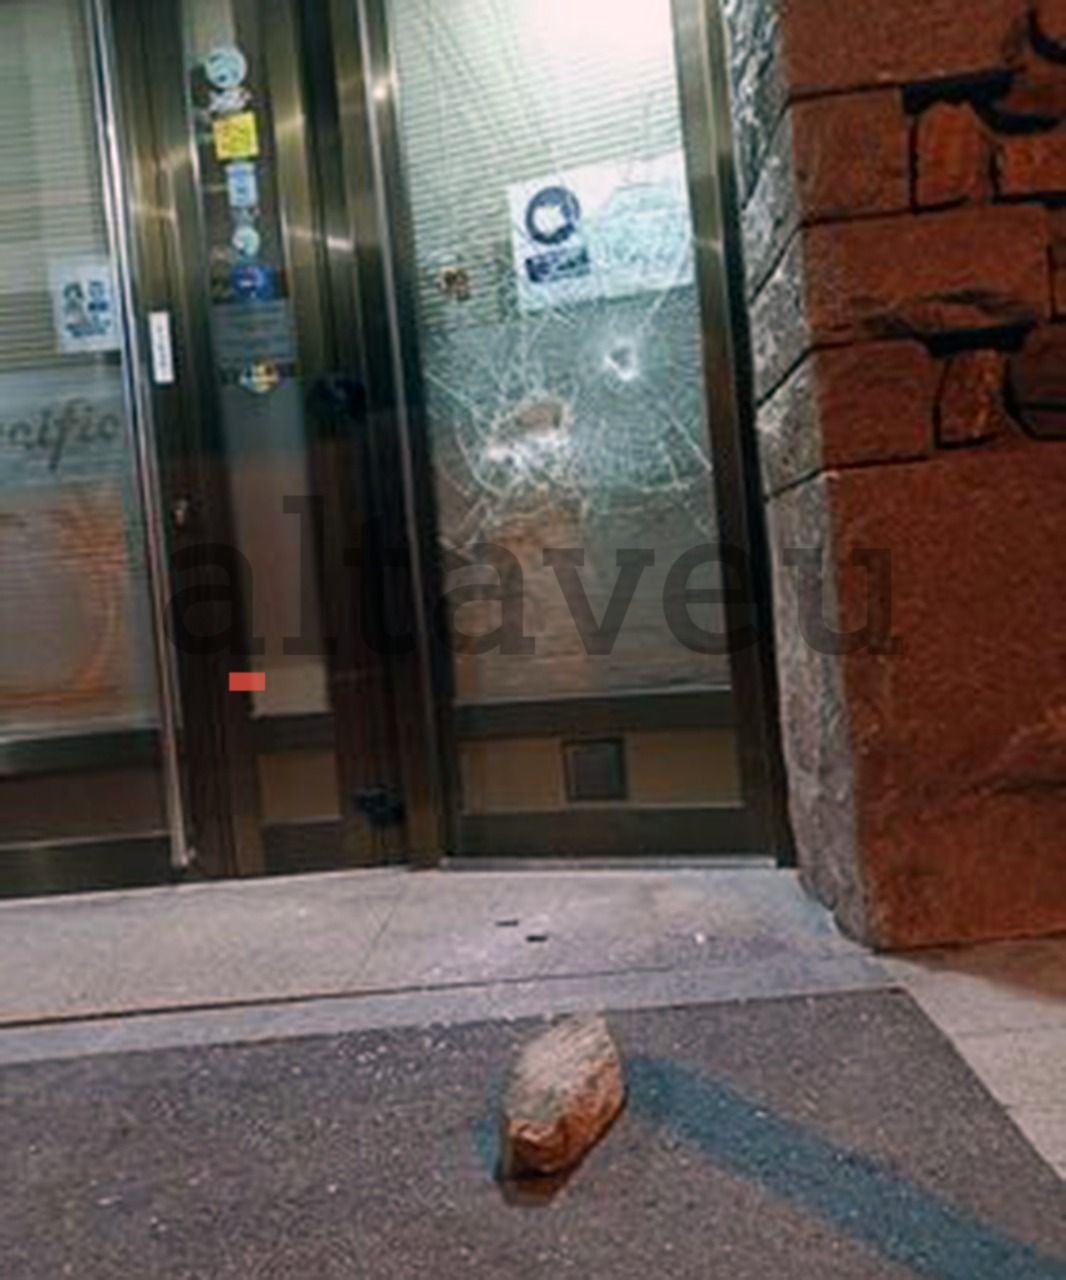 La pedra amb què es va rebentar la vidriera d'un bar d'Escaldes.